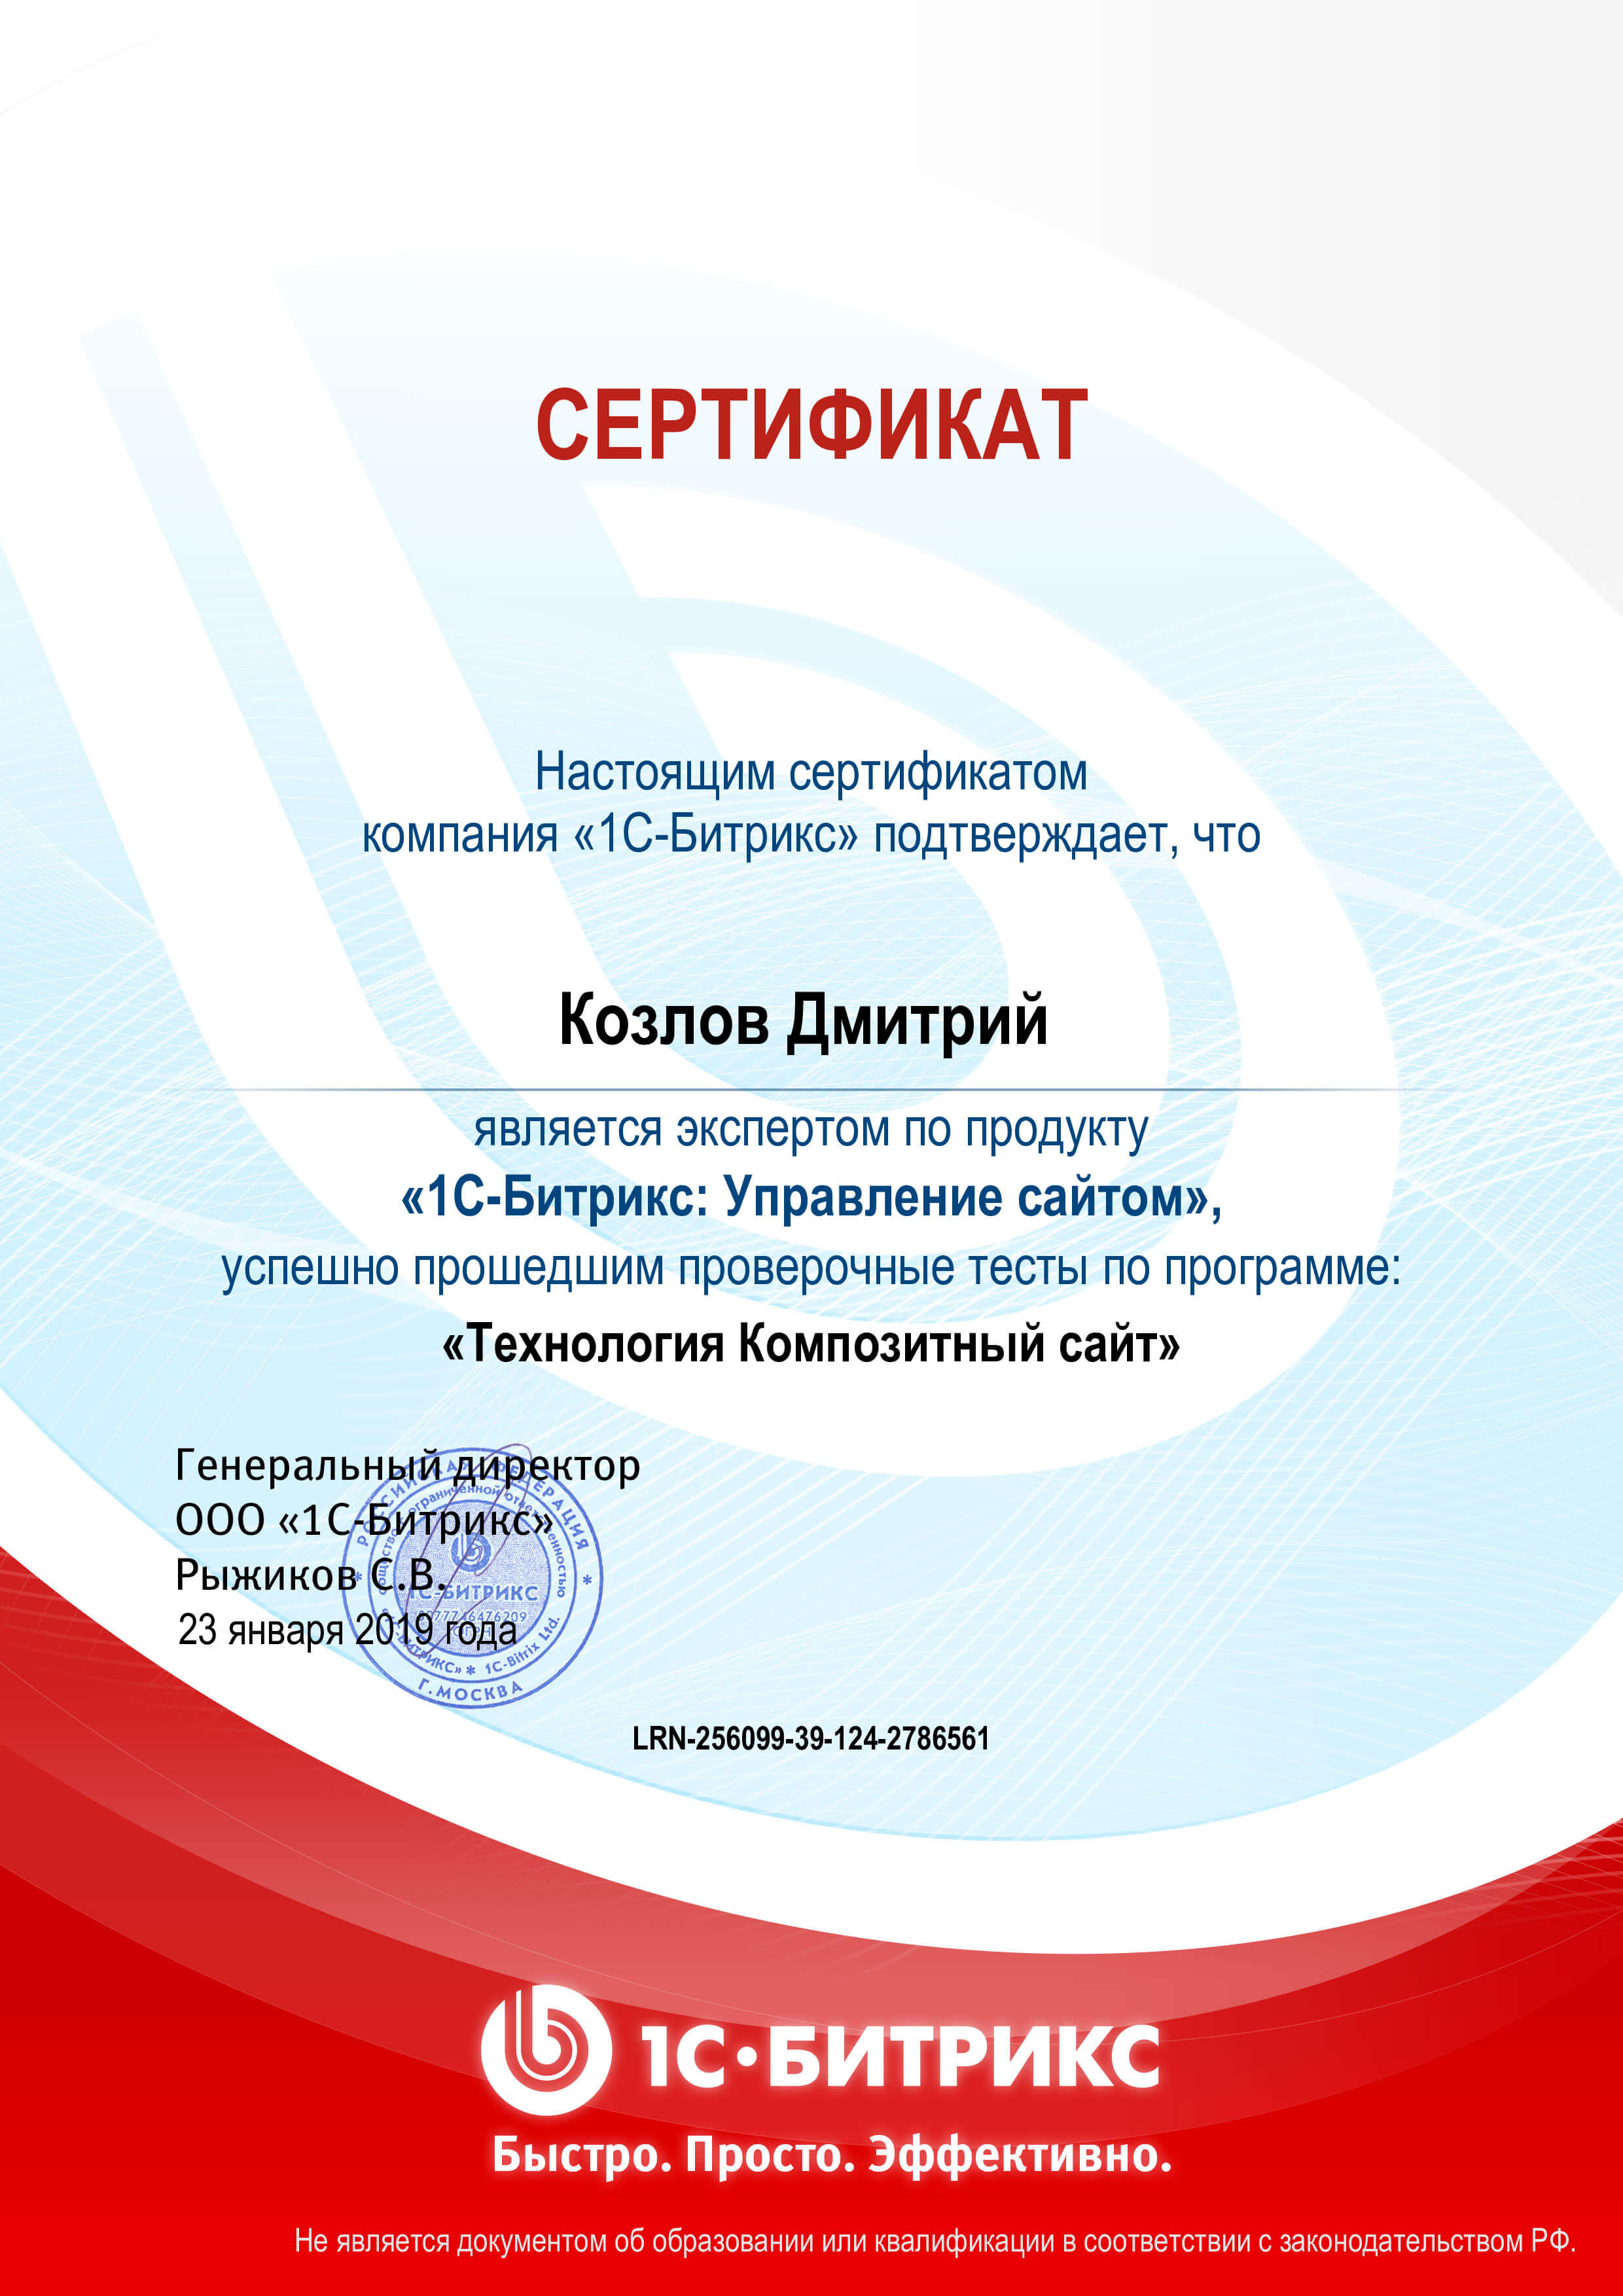 Сертификат “Технология композитный сайт”